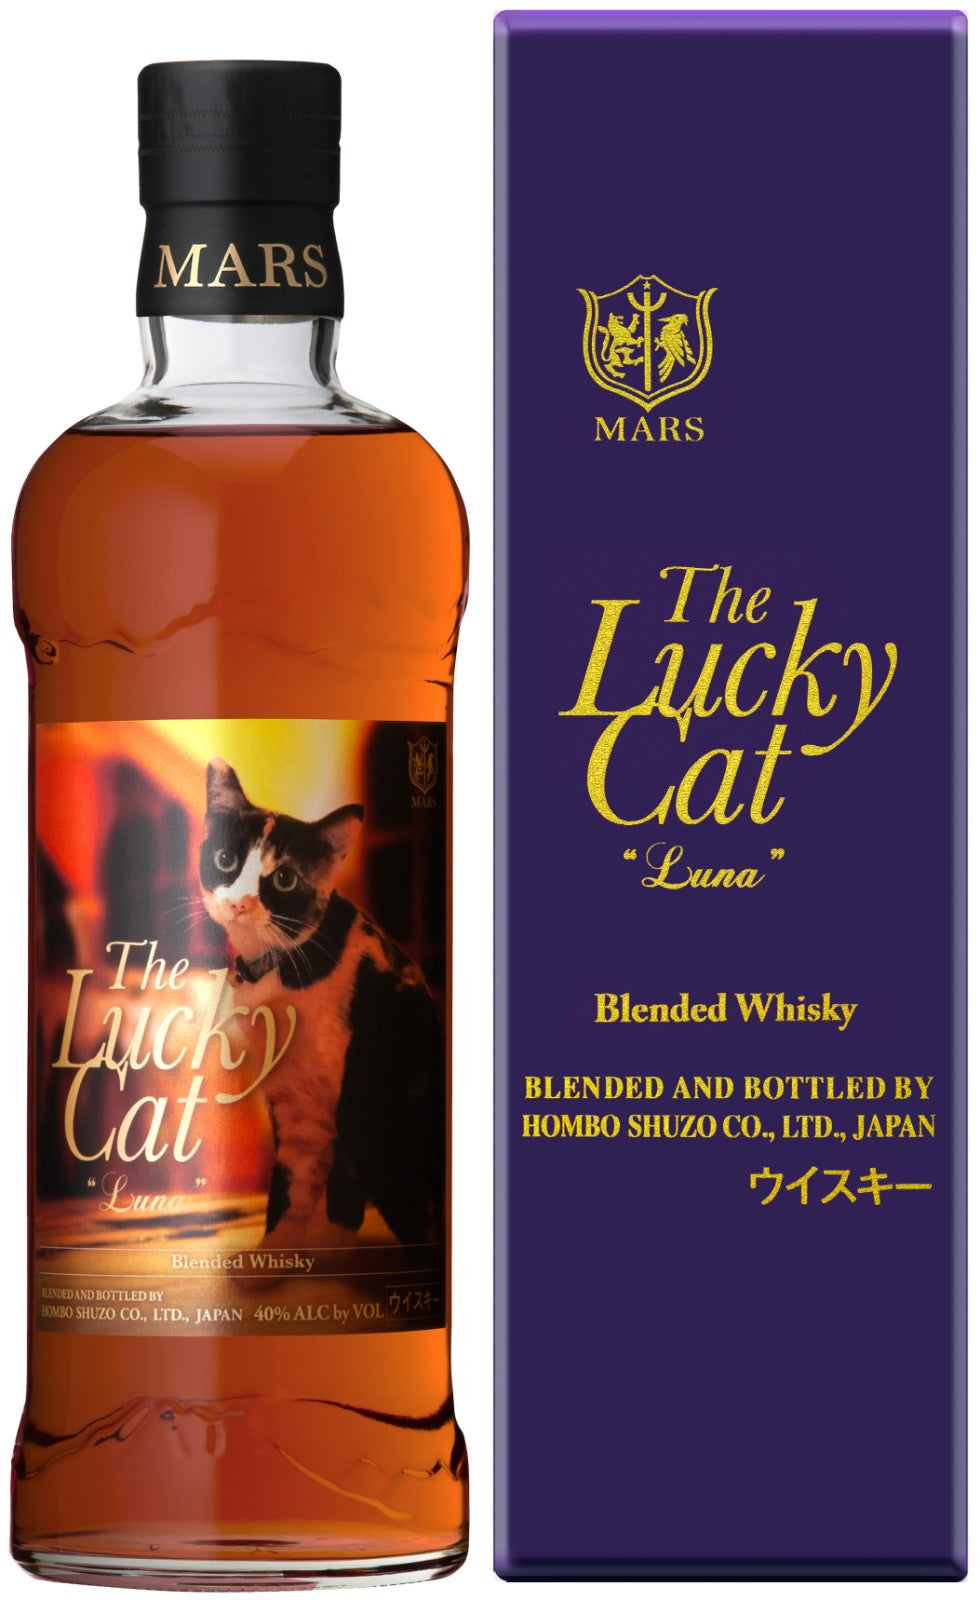 The Lucky Cat Luna Japanese Blended Whisky 700ml